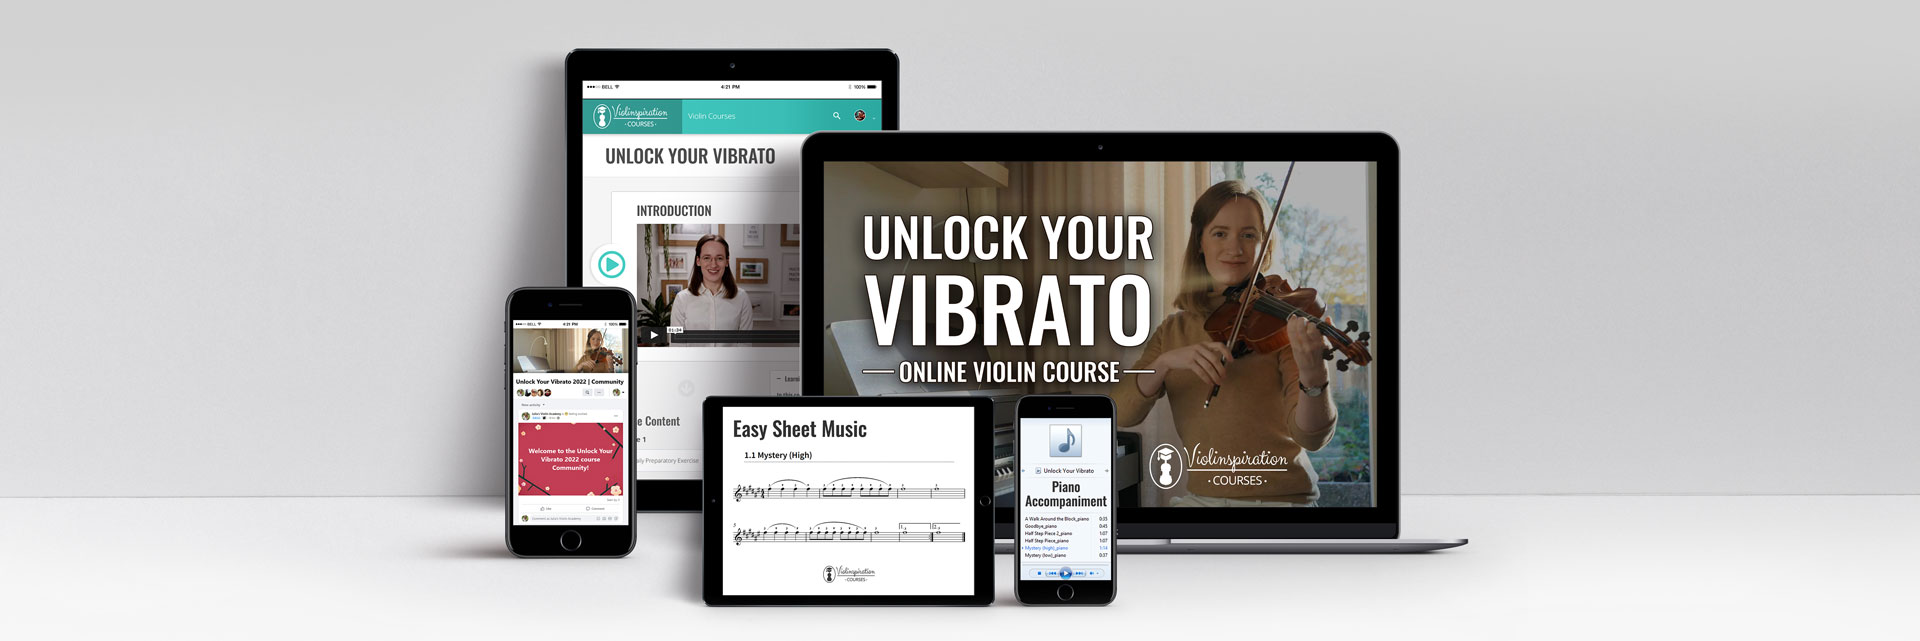 Unlock-Your-Vibrato